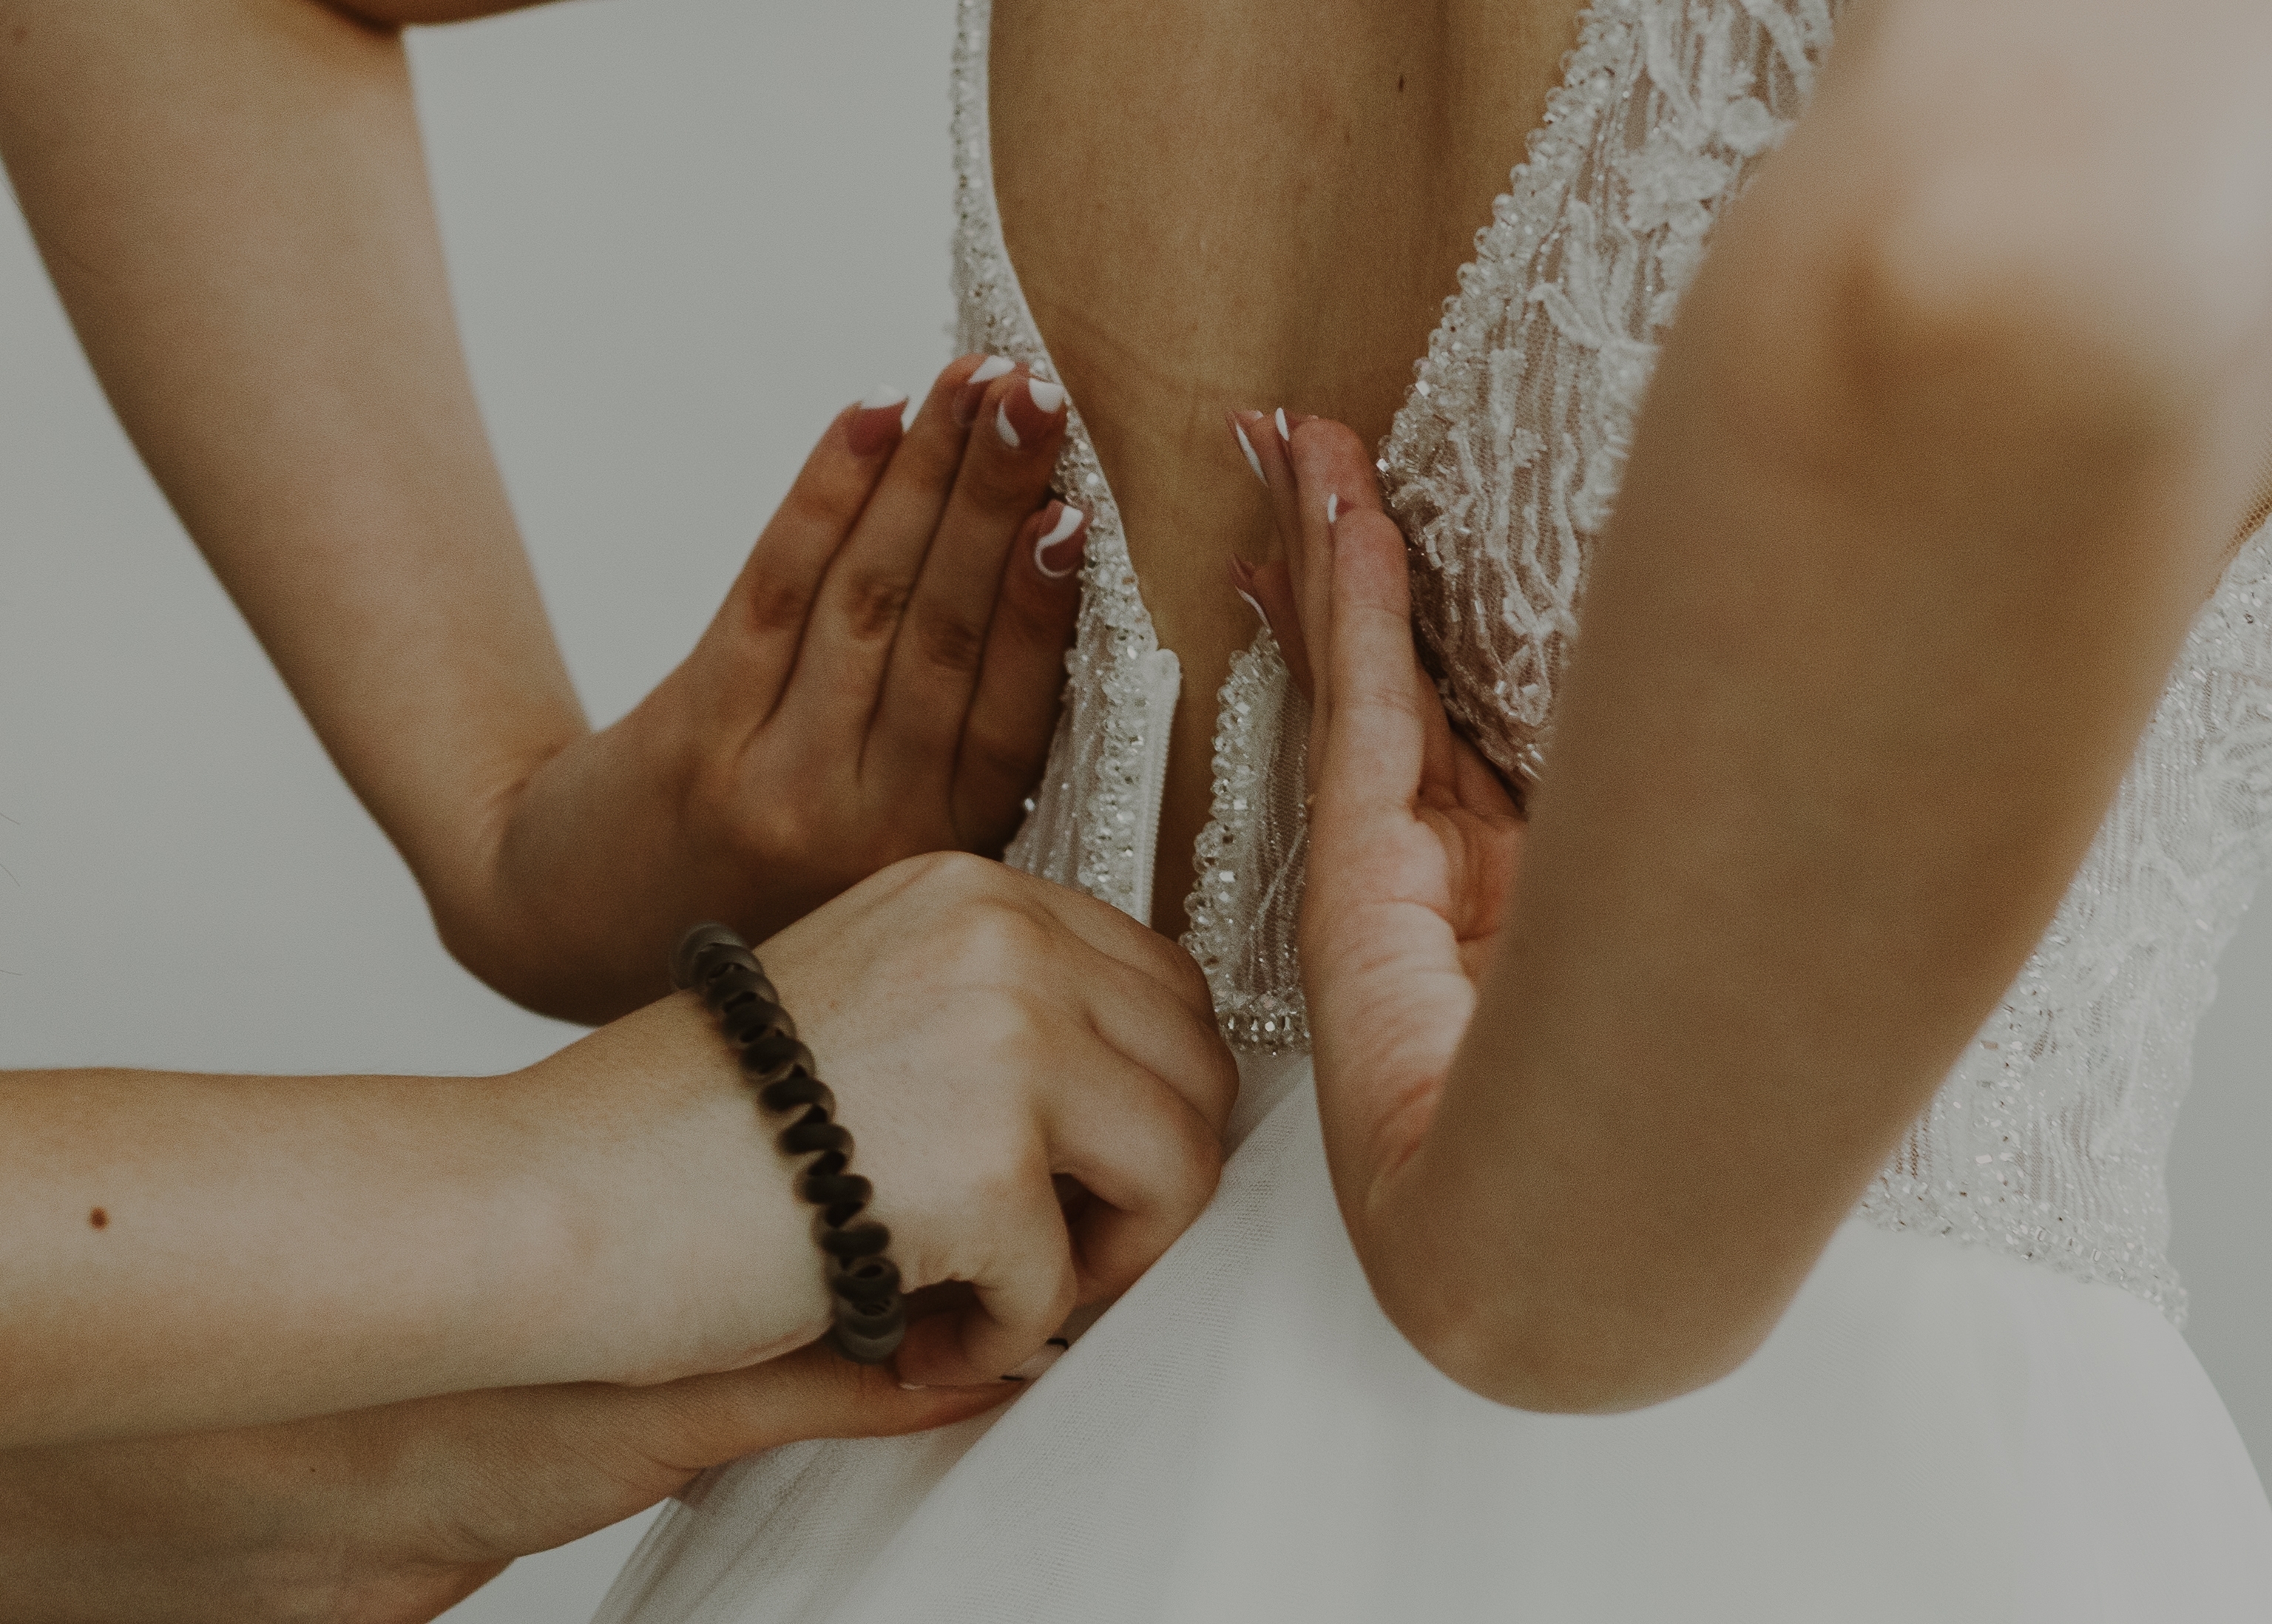 Une personne aidant une mariée à fermer la fermeture éclair de sa robe | Source : Shutterstock